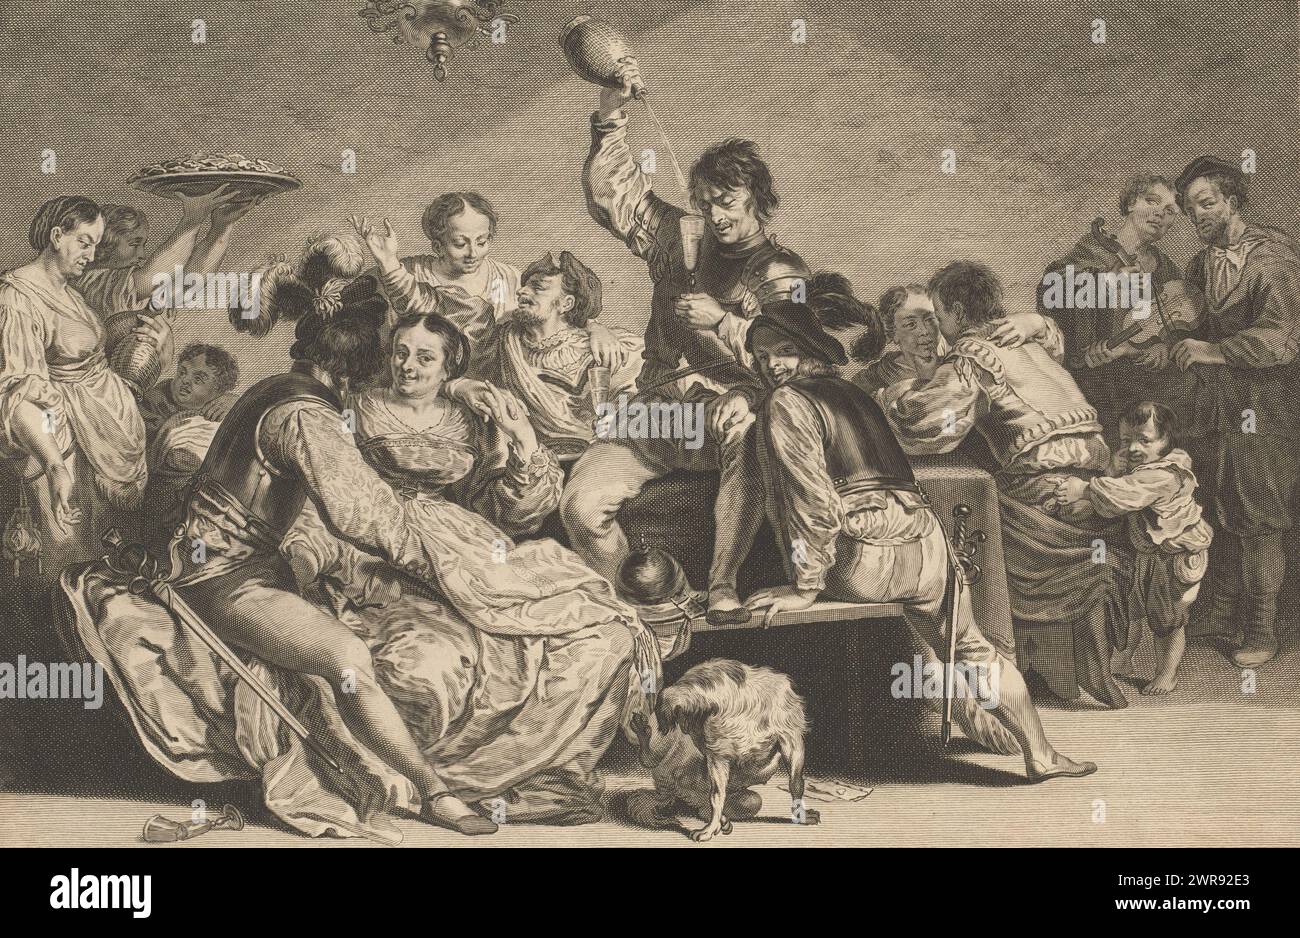 Bordell, Caelaturae (Serientitel), Soldaten genießen sich an einem Tisch mit Frauen und Getränken. Neben dem Tisch spielen zwei Musiker Geige und ein kleiner Junge stiehlt einem Soldaten einen Geldbeutel. Im Vordergrund ein Hund, Spielkarten und ein Glasbruch., Druckerei: Jeremias Falck, nach Malerei von: Johann Liss, Amsterdam, 1646 - 1658, Papier, Stich, Höhe 283 mm x Breite 385 mm, bedruckt Stockfoto